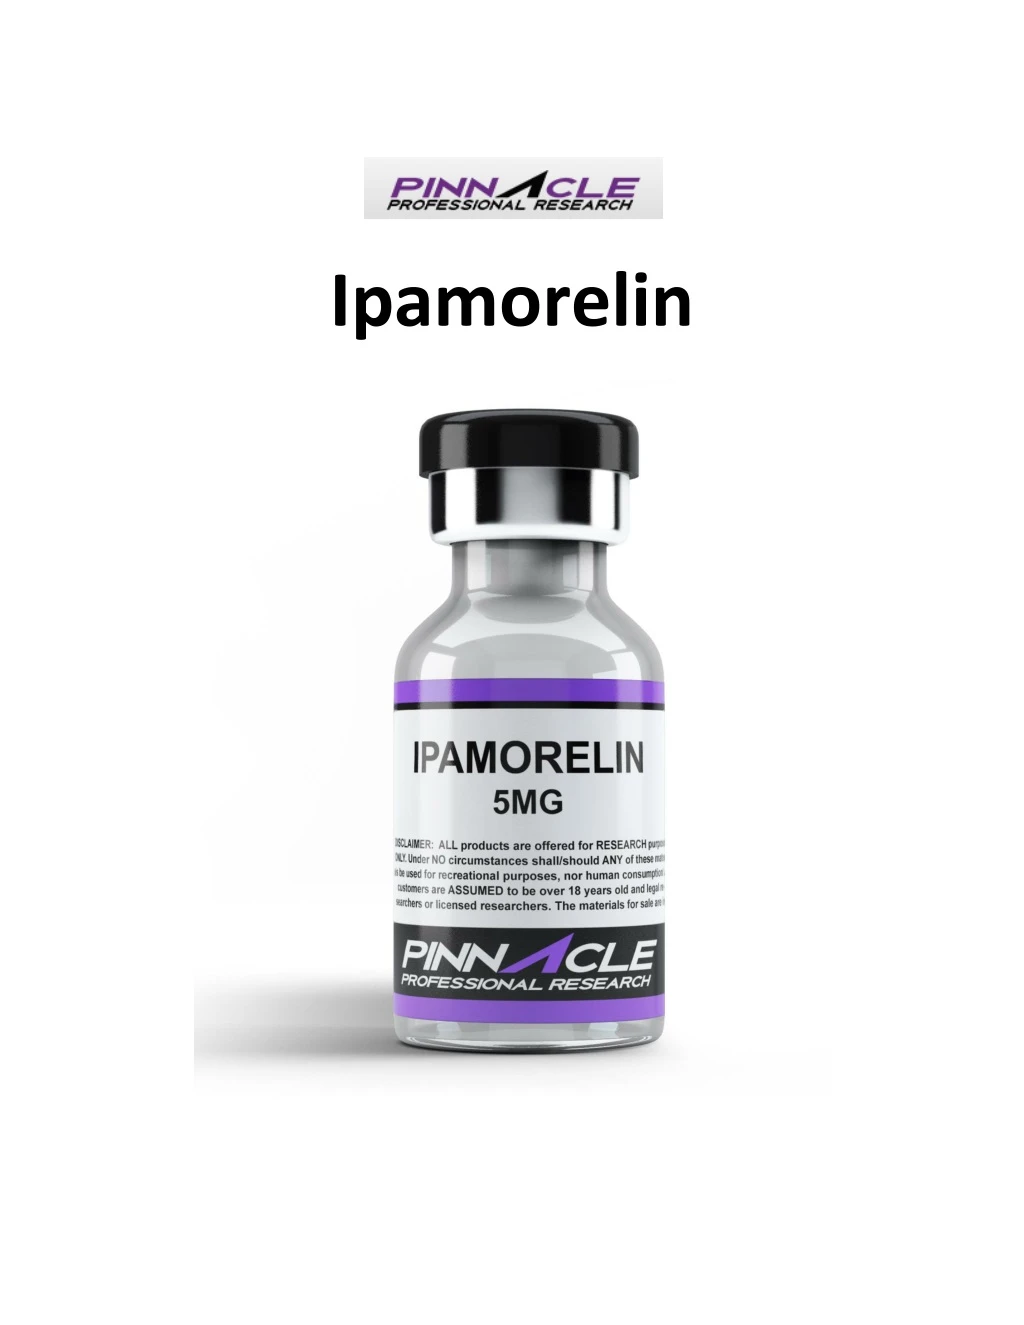 ipamorelin